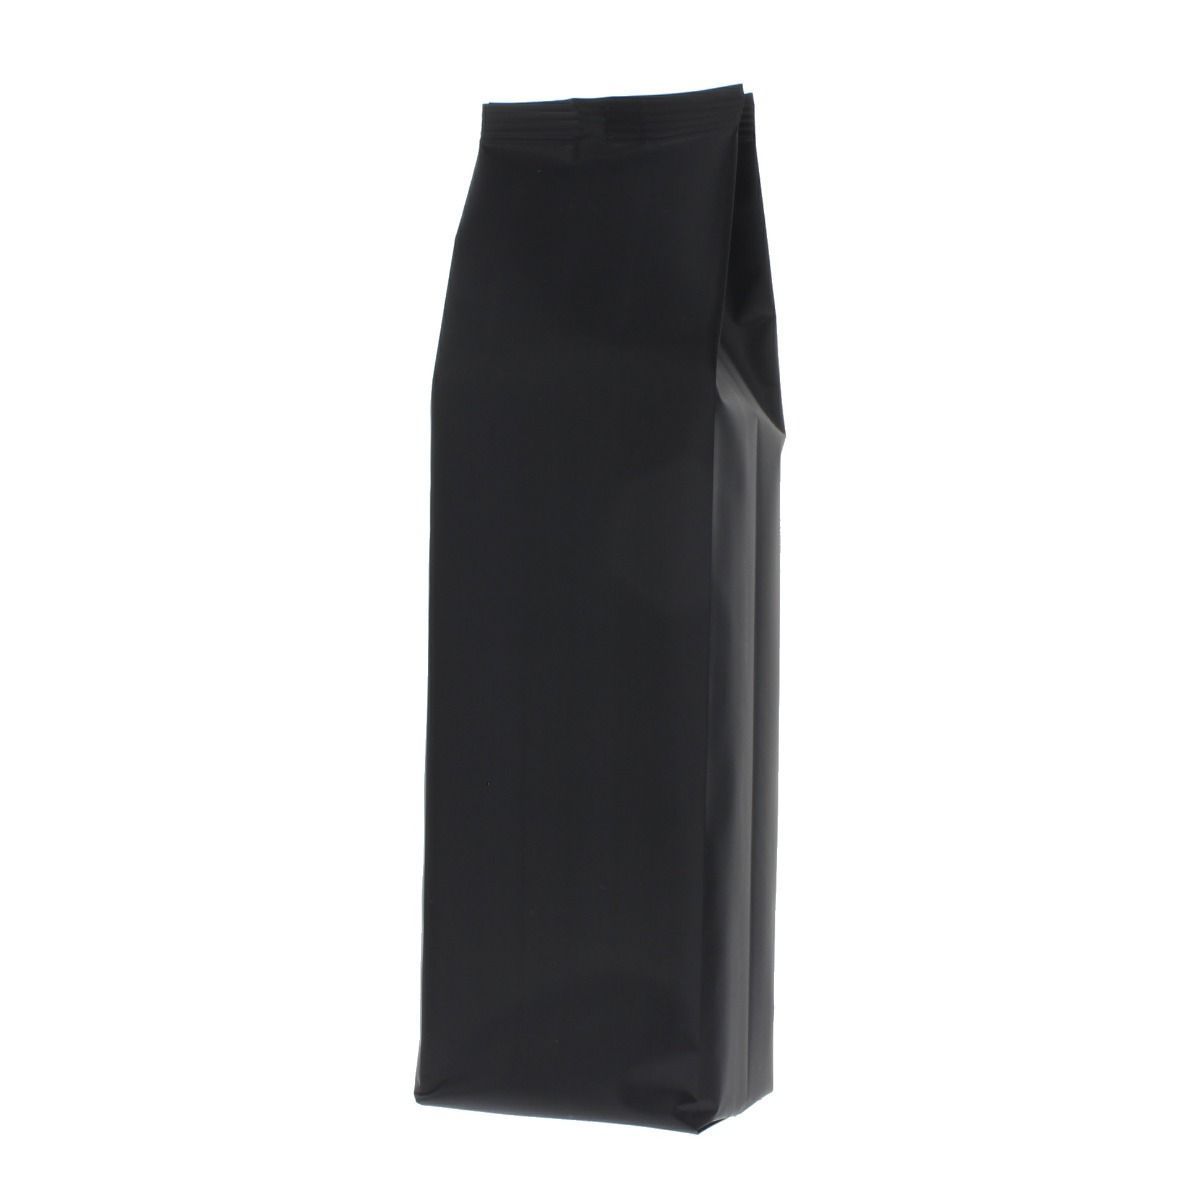 Side gusset pouch - matt black - 80x260+{25+25} mm (700-900 ml)